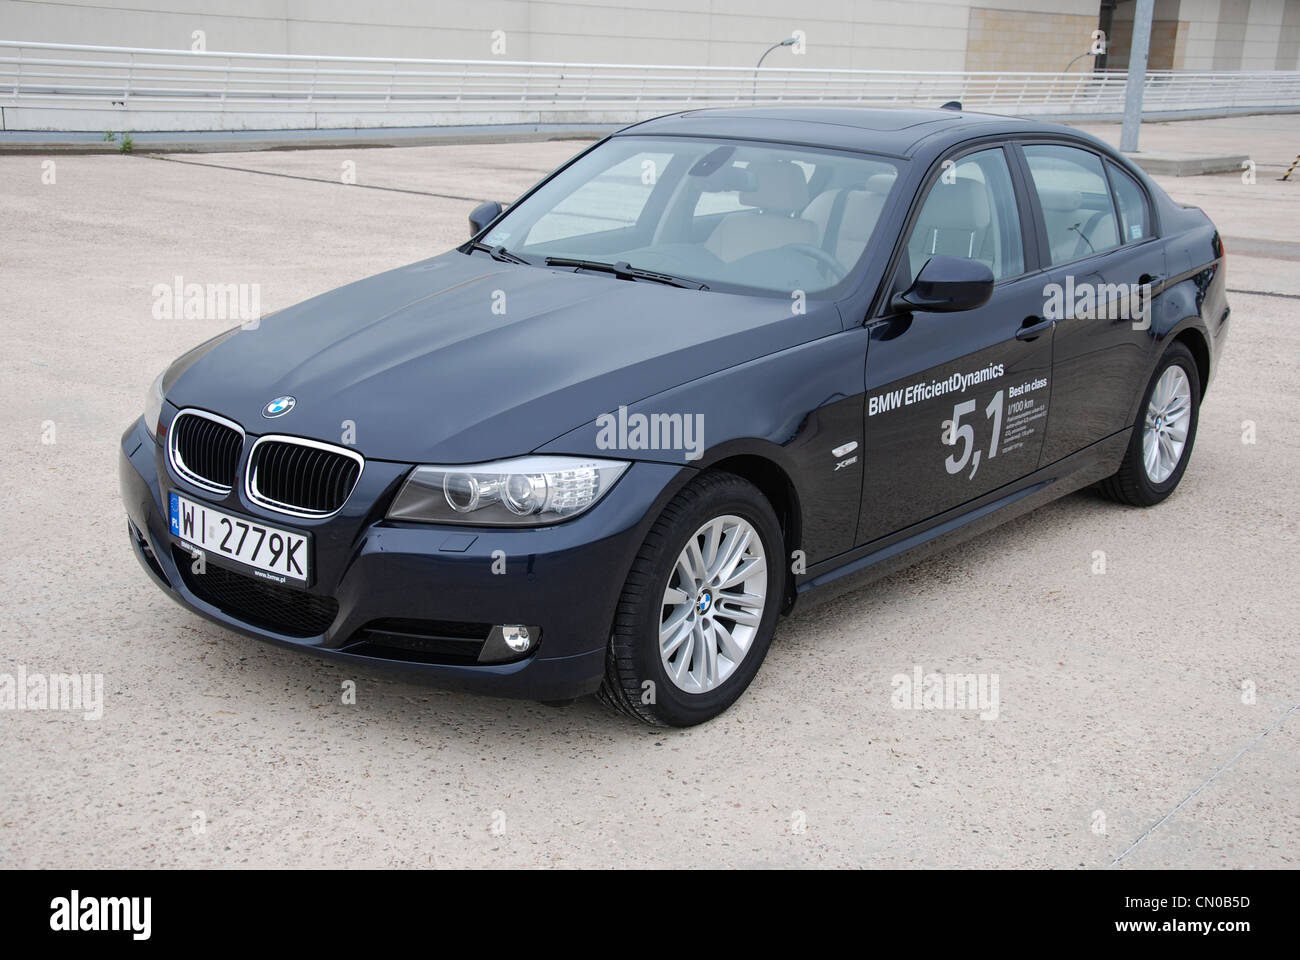 BMW 320d - dinámica eficiente mi 2005 (FL 2009) - Premium alemán coche de  clase media alta (segmento D) - en el parking Fotografía de stock - Alamy